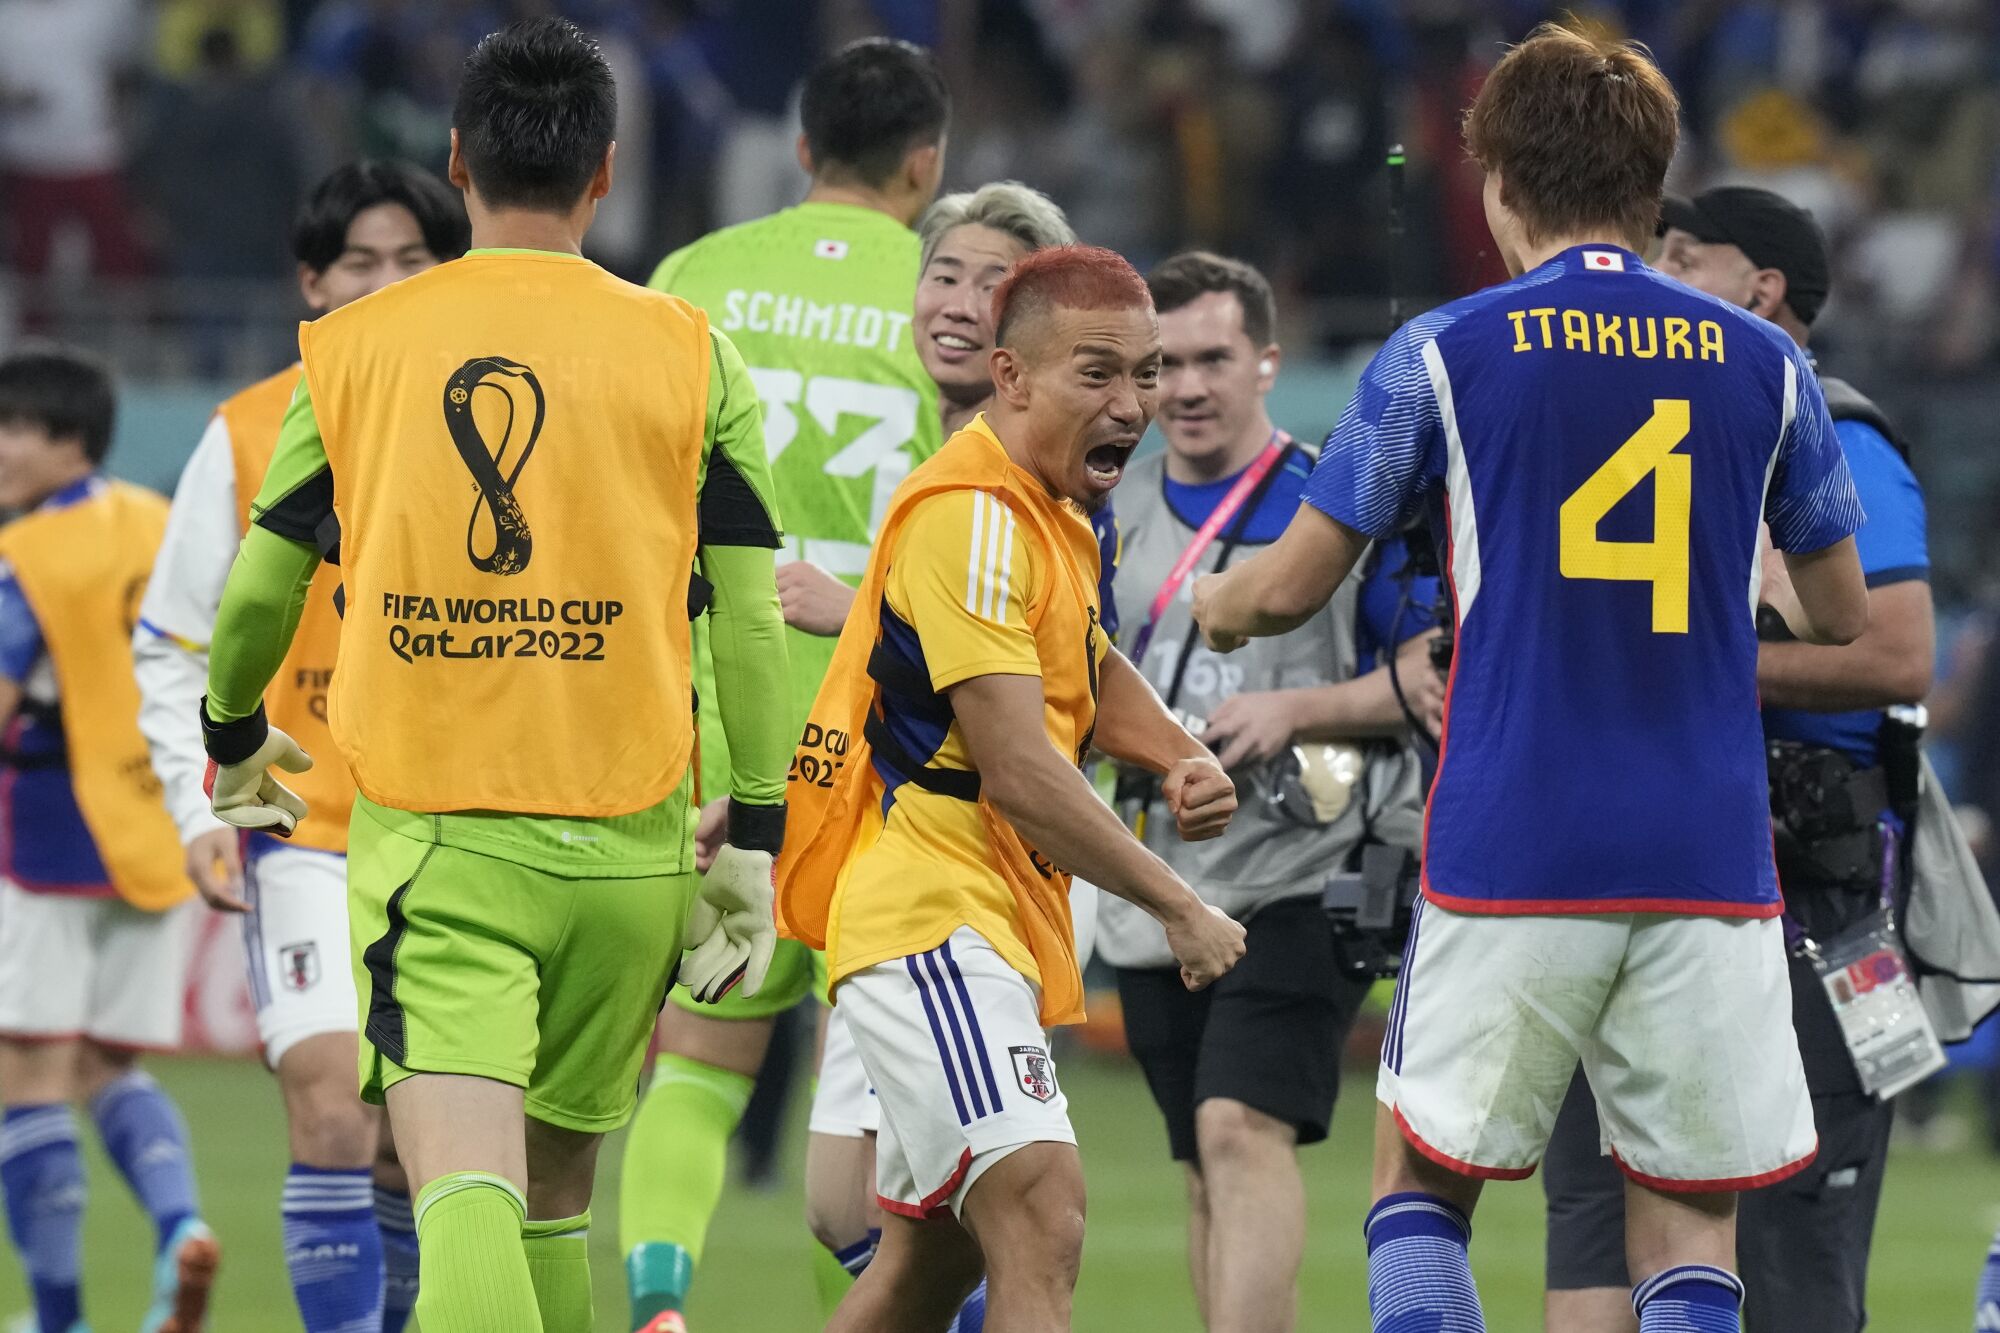 कतर के दोहा में खलीफा इंटरनेशनल स्टेडियम में जर्मनी को हराने के बाद जश्न मनाते जापान के खिलाड़ी